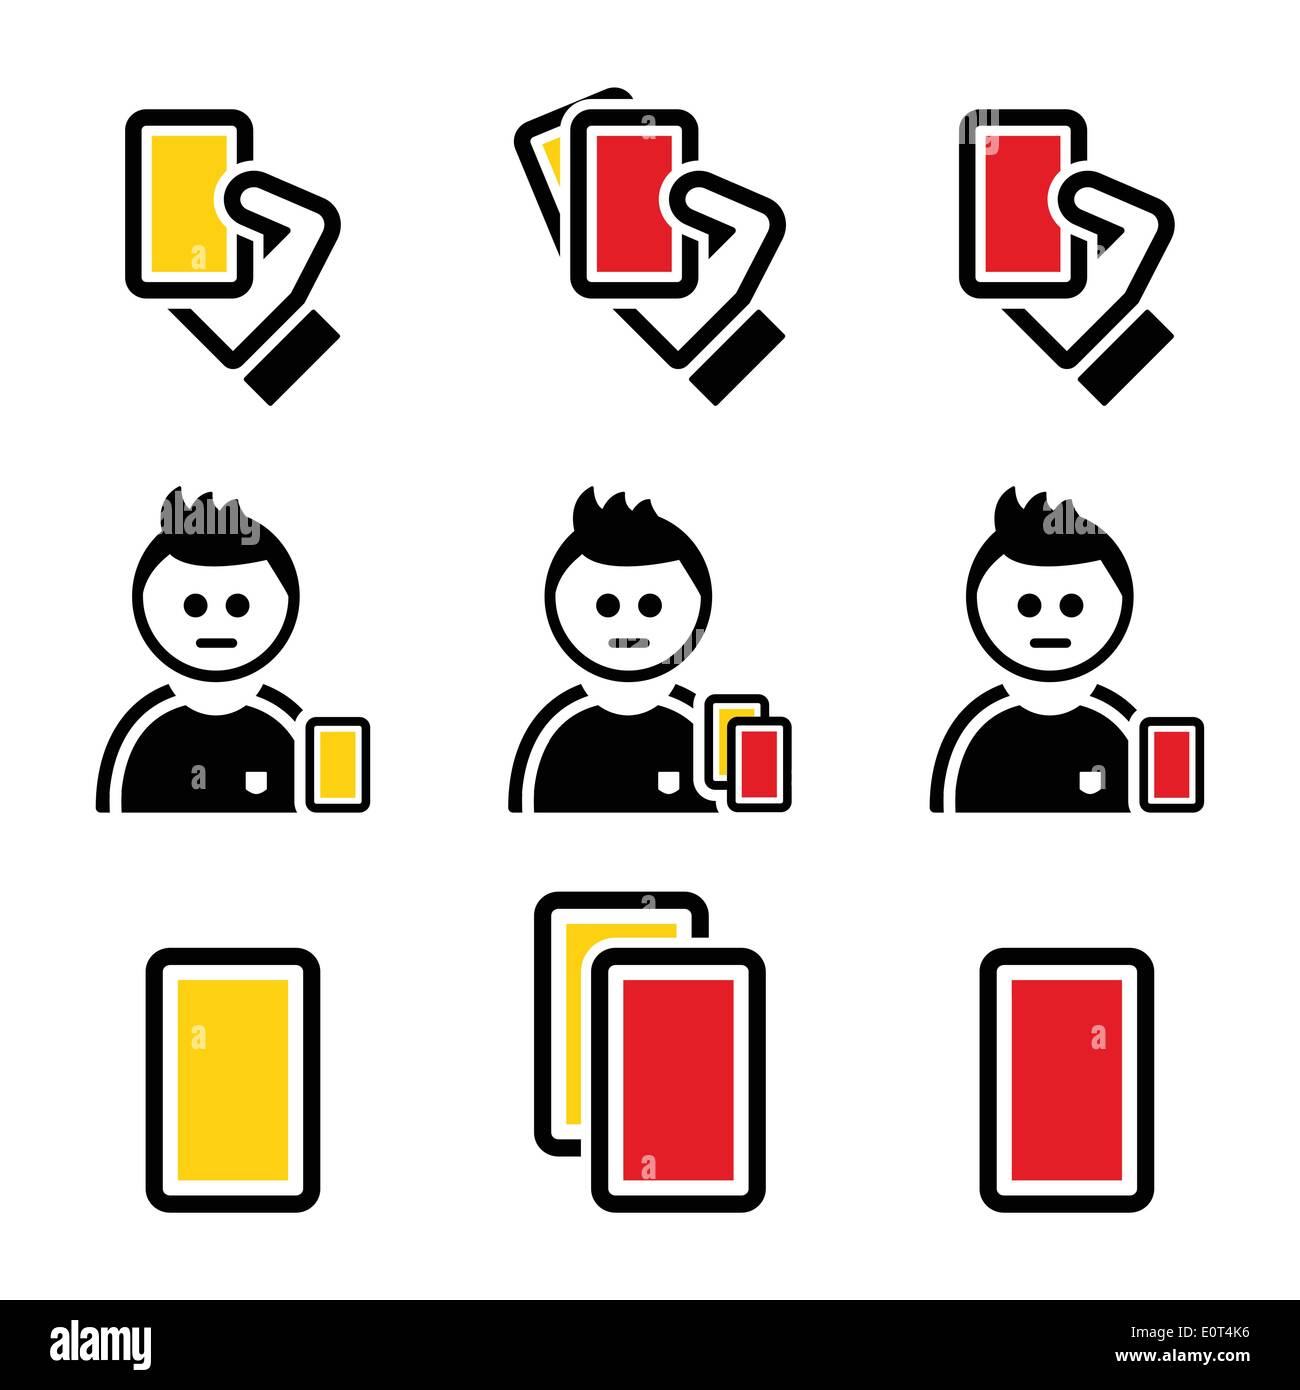 Le football ou soccer carte jaune et rouge icons set Illustration de Vecteur